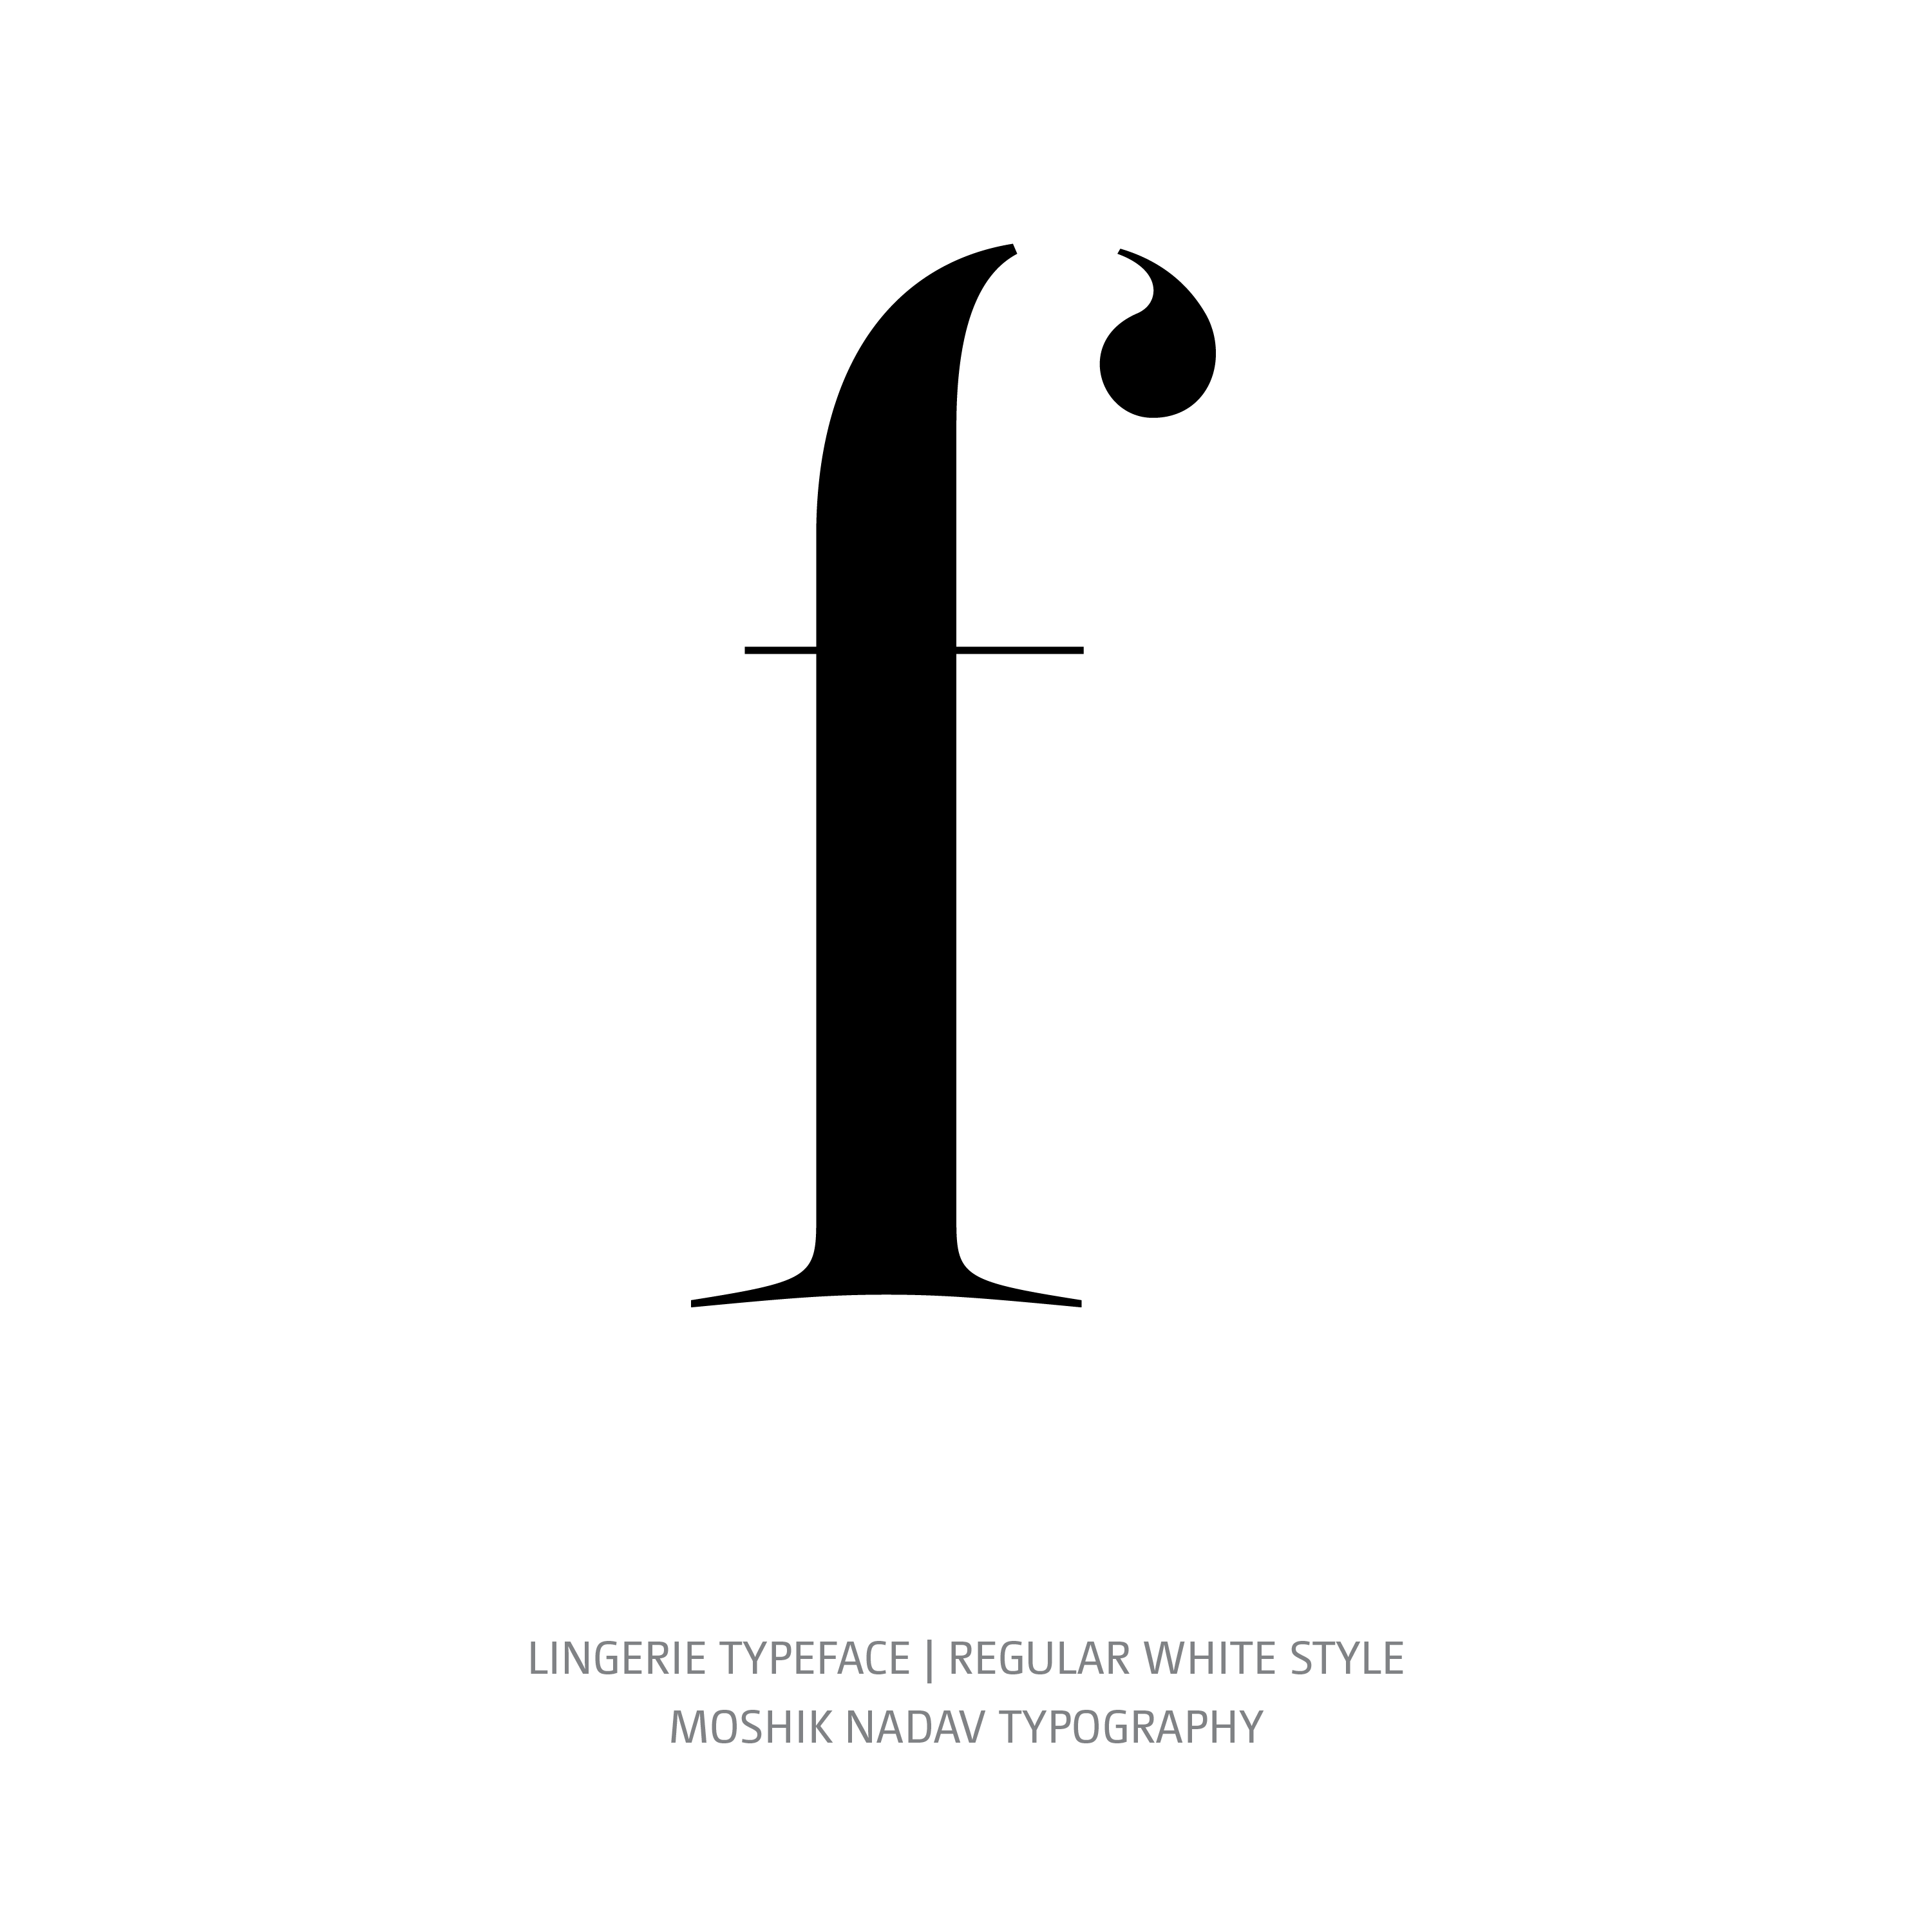 Lingerie Typeface Regular White f